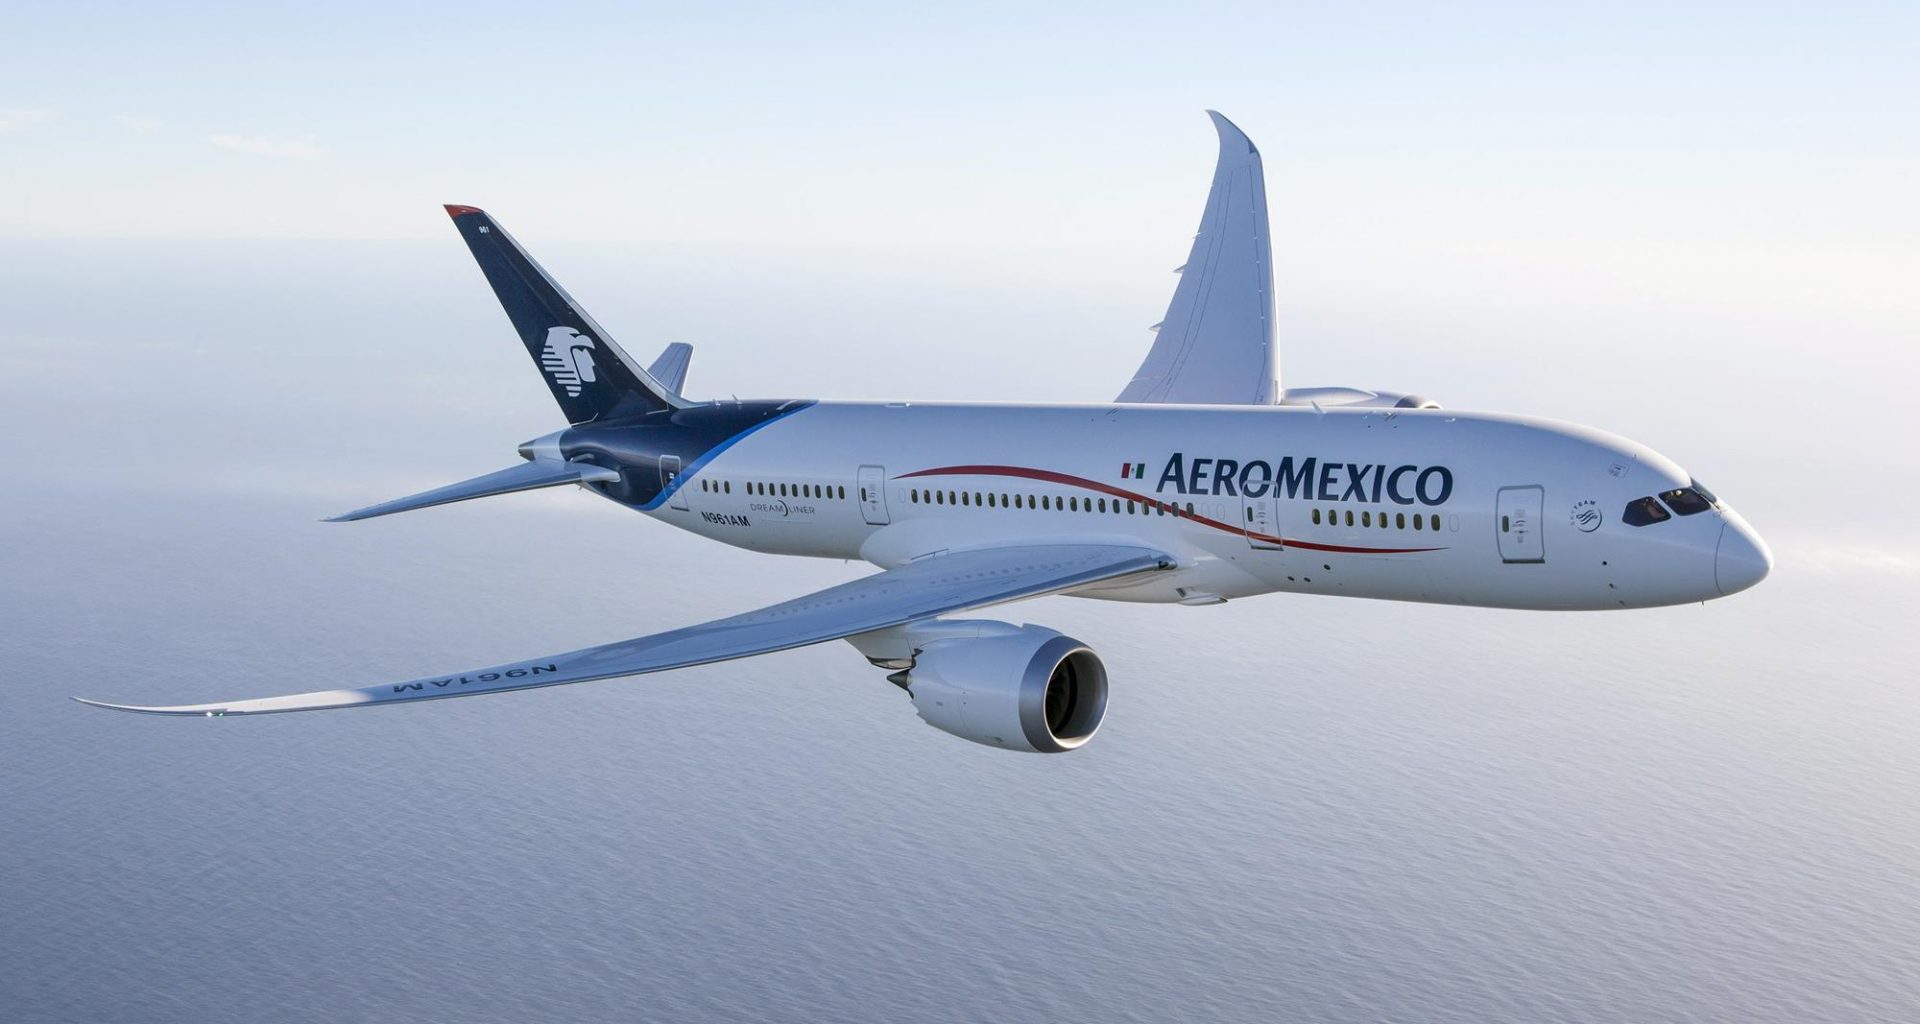 Aeroméxico aircraft